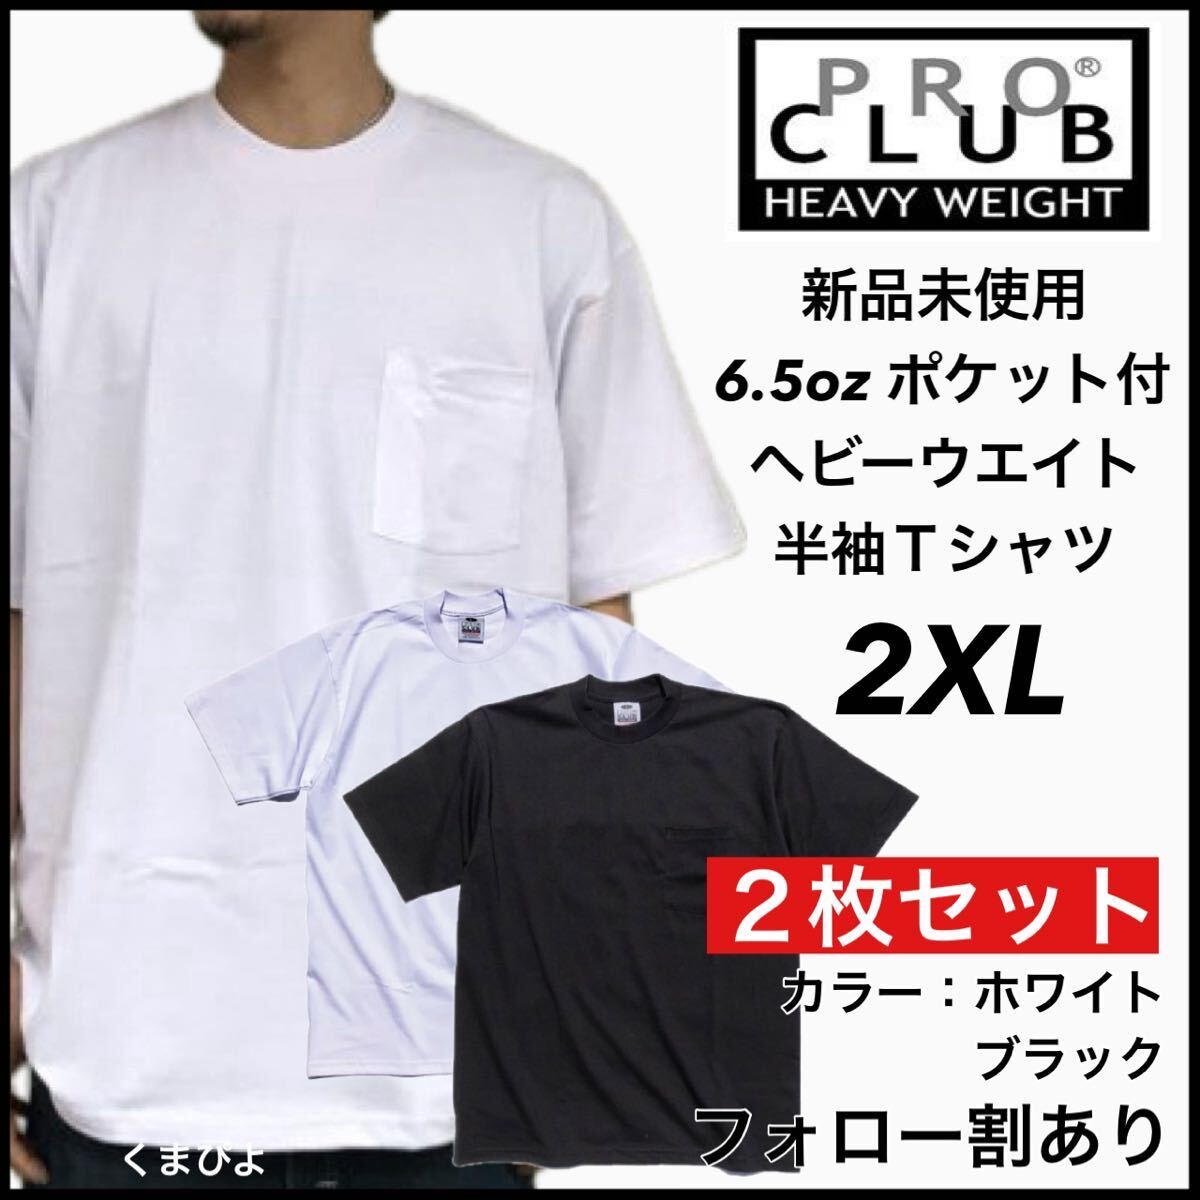 新品未使用 プロクラブ 6.5oz ヘビーウエイト ポケット付き 無地 半袖Tシャツ 白黒2枚セット 2XLサイズ PROCLUB